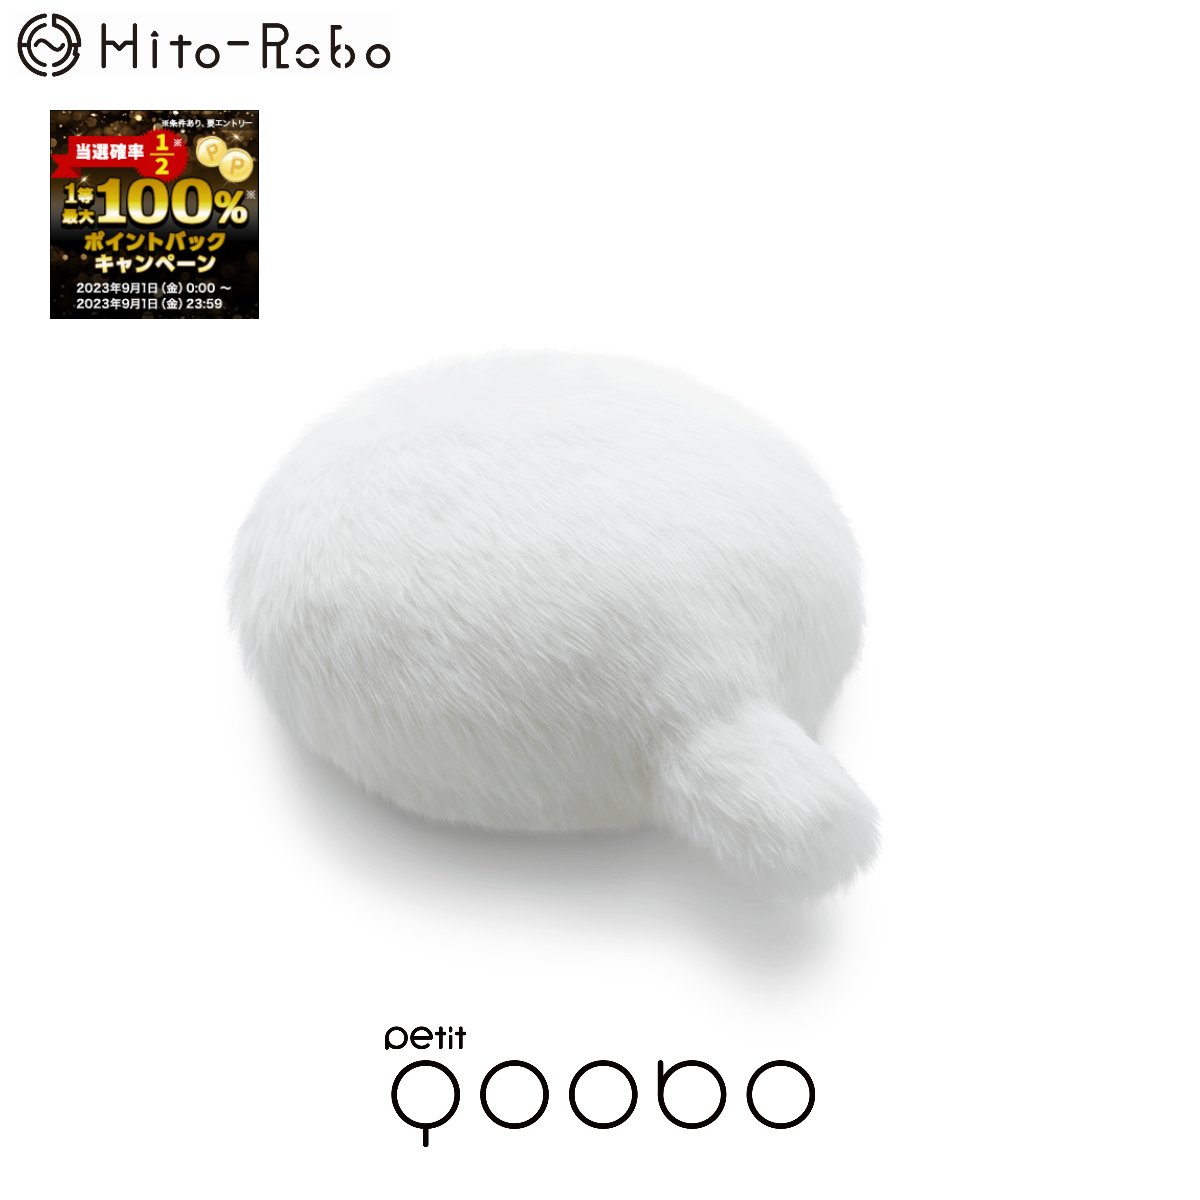 Petit Qoobo Blanc（プチ クーボ ブラン 白 色） 【送料無料】 小型 しっぽ クッション ロボット 癒し ペット ネコ 型 介護 枕 かわいい クリスマス